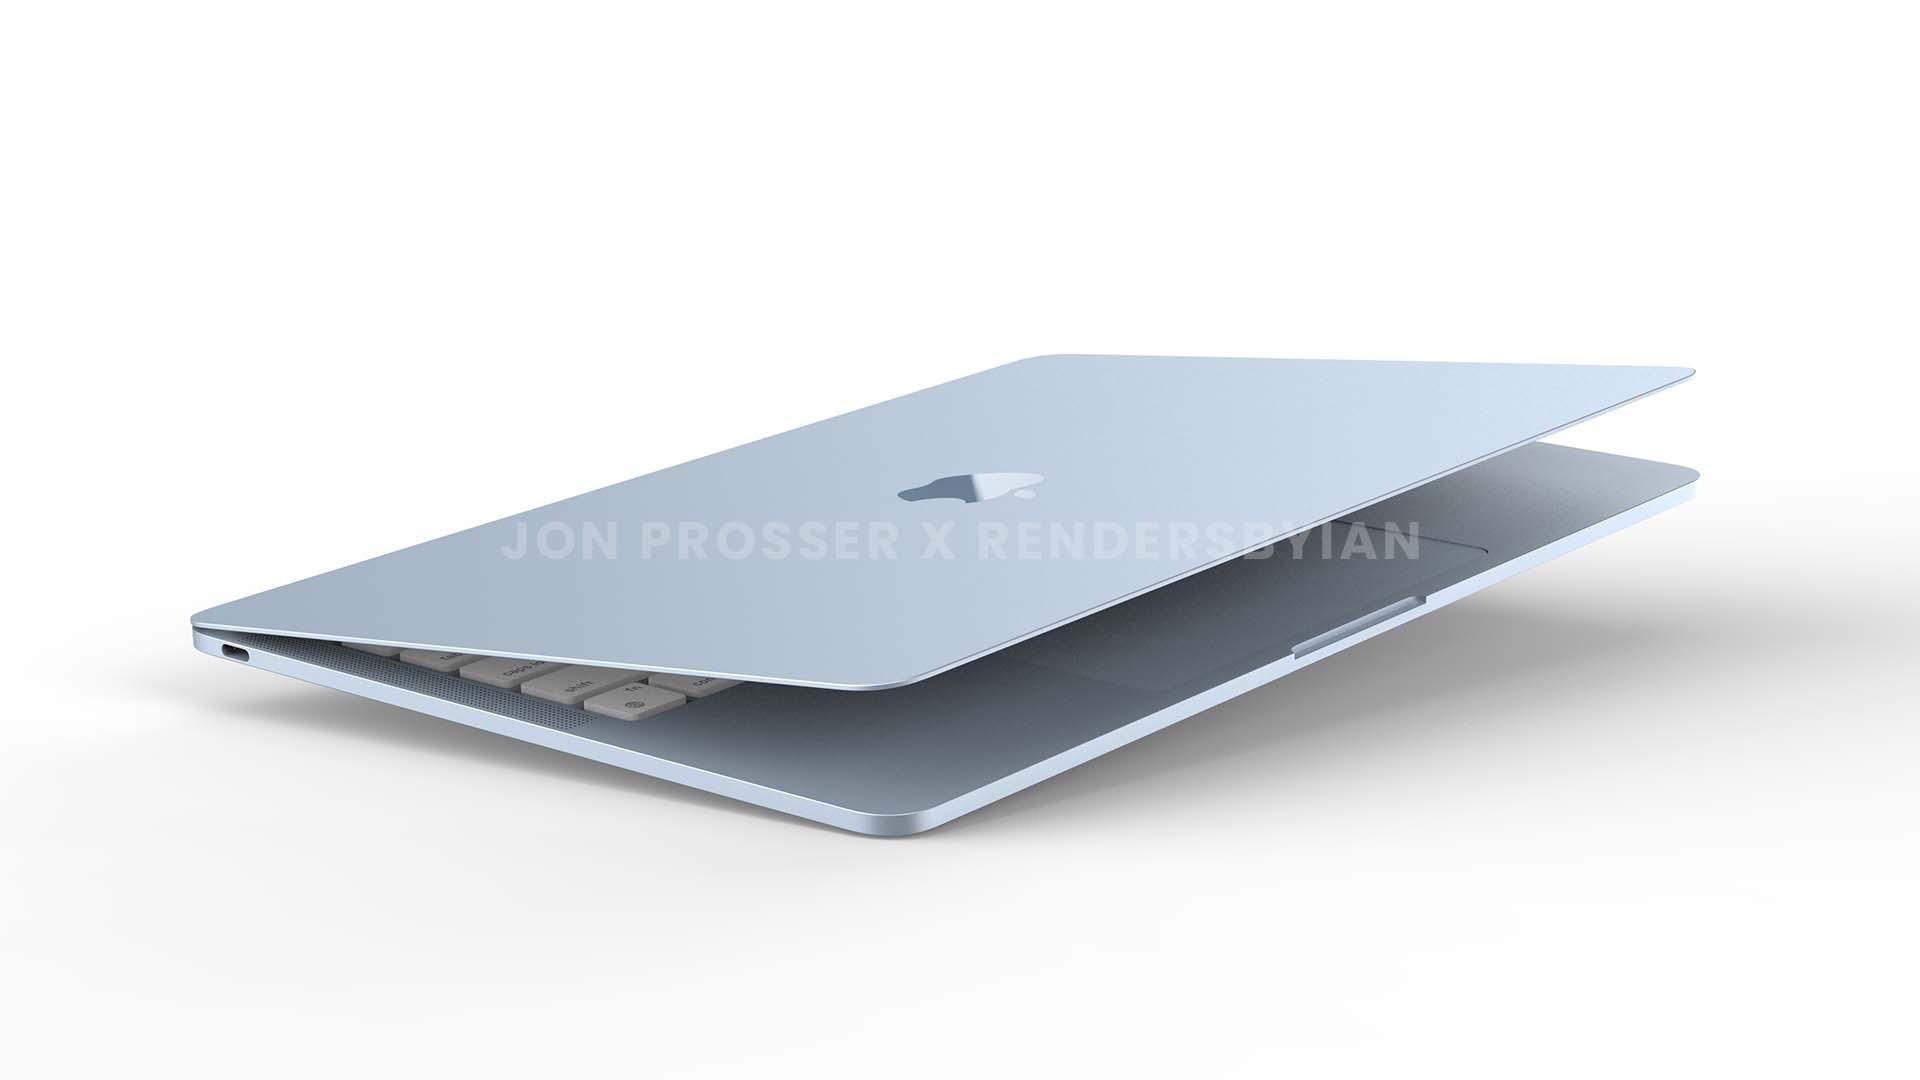 Nye MacBook Air skal komme uten kileformen, men være tynnere og kraftigere enn før, ifølge ryktene. 